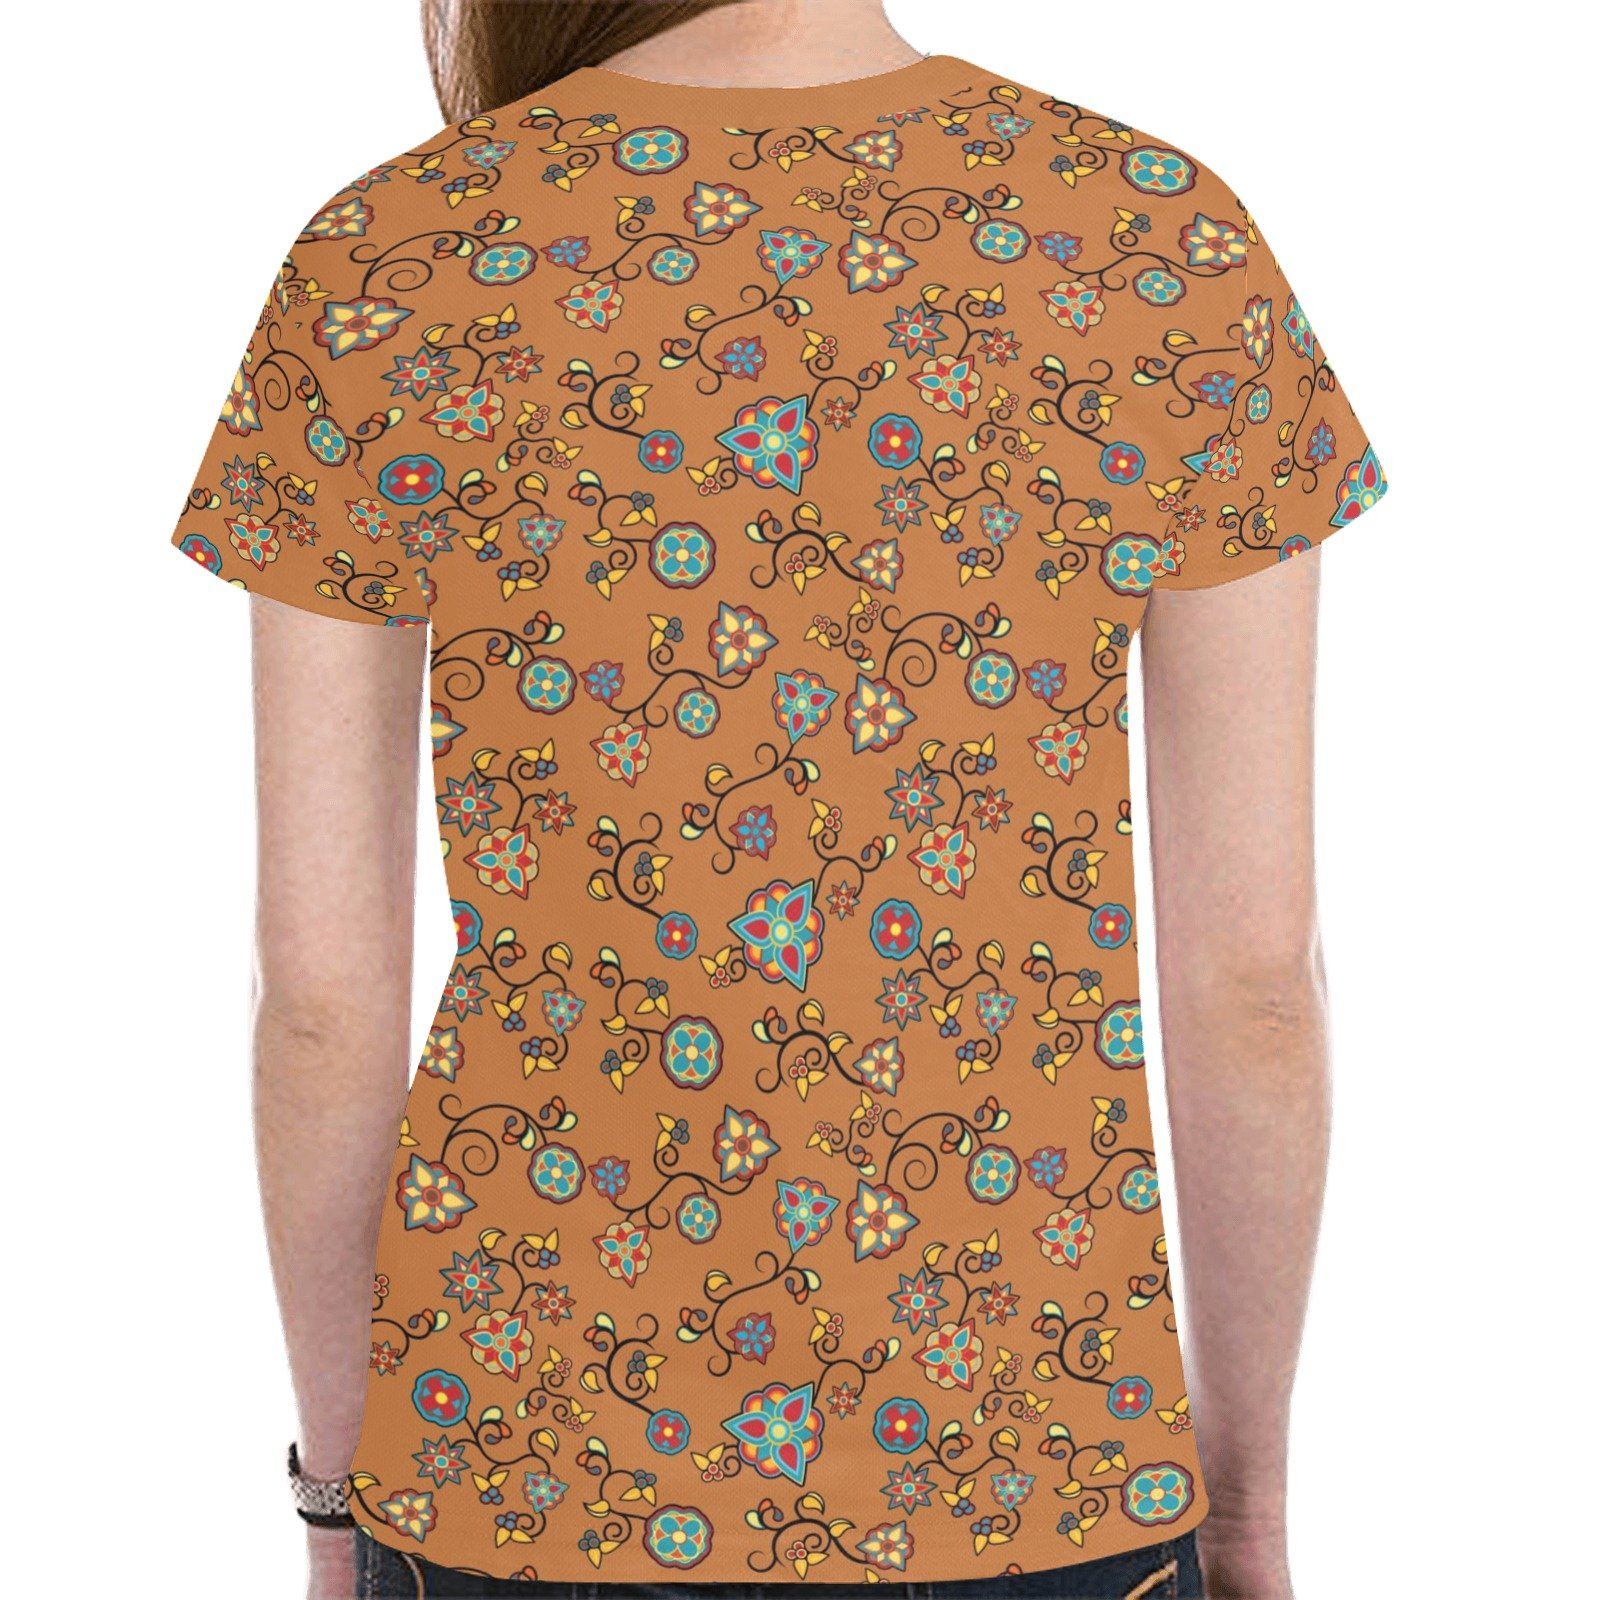 Fire Bloom Light New All Over Print T-shirt for Women (Model T45) tshirt e-joyer 